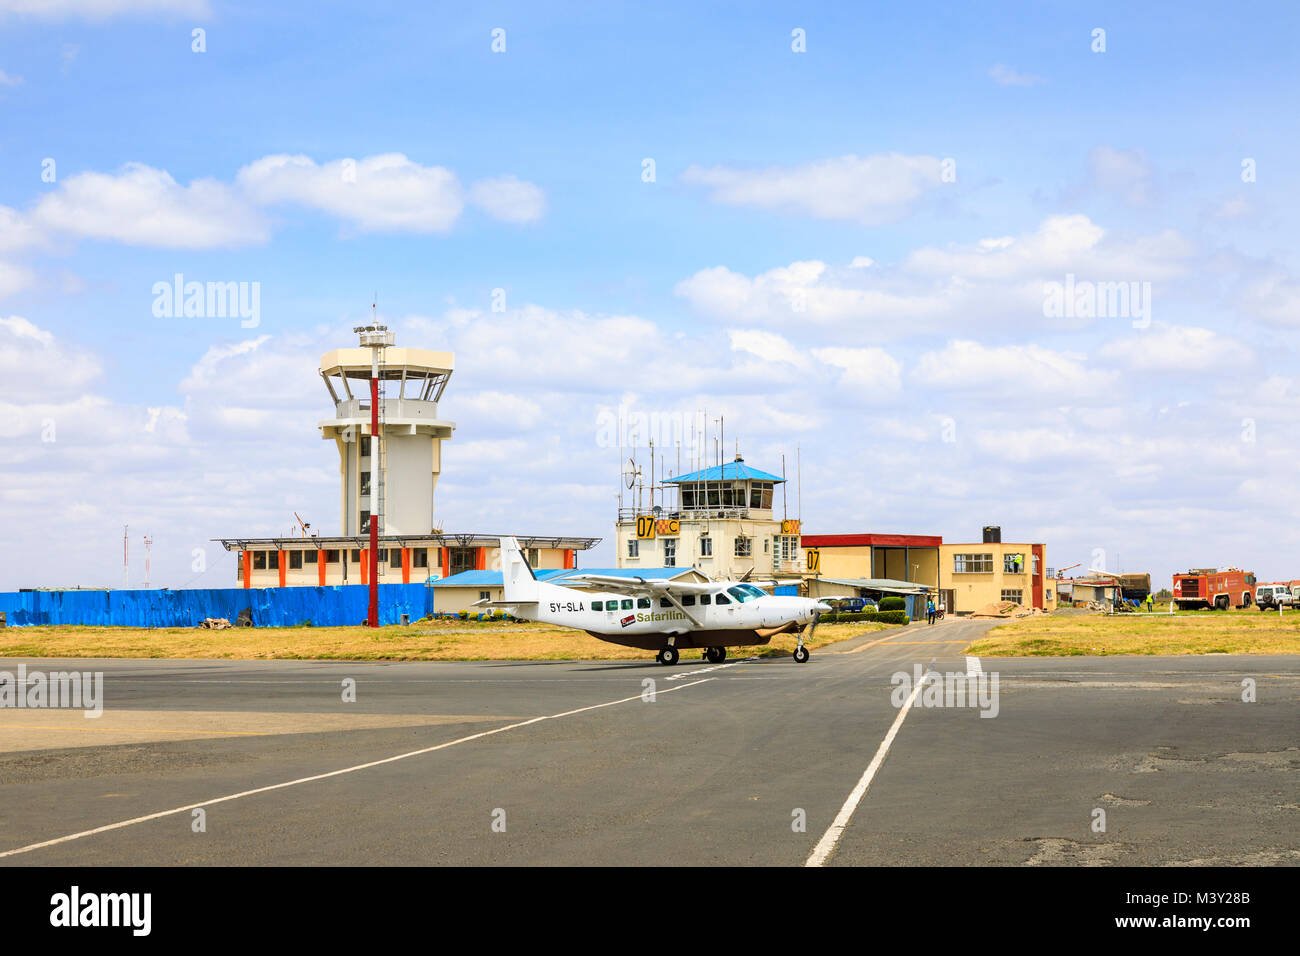 Safarilink Flugzeugen, die von den Kontrollturm am Wilson Airport, dem lokalen Flughafen in Nairobi Rollen, für Inlandsflüge in die Masai Mara, Kenia Stockfoto